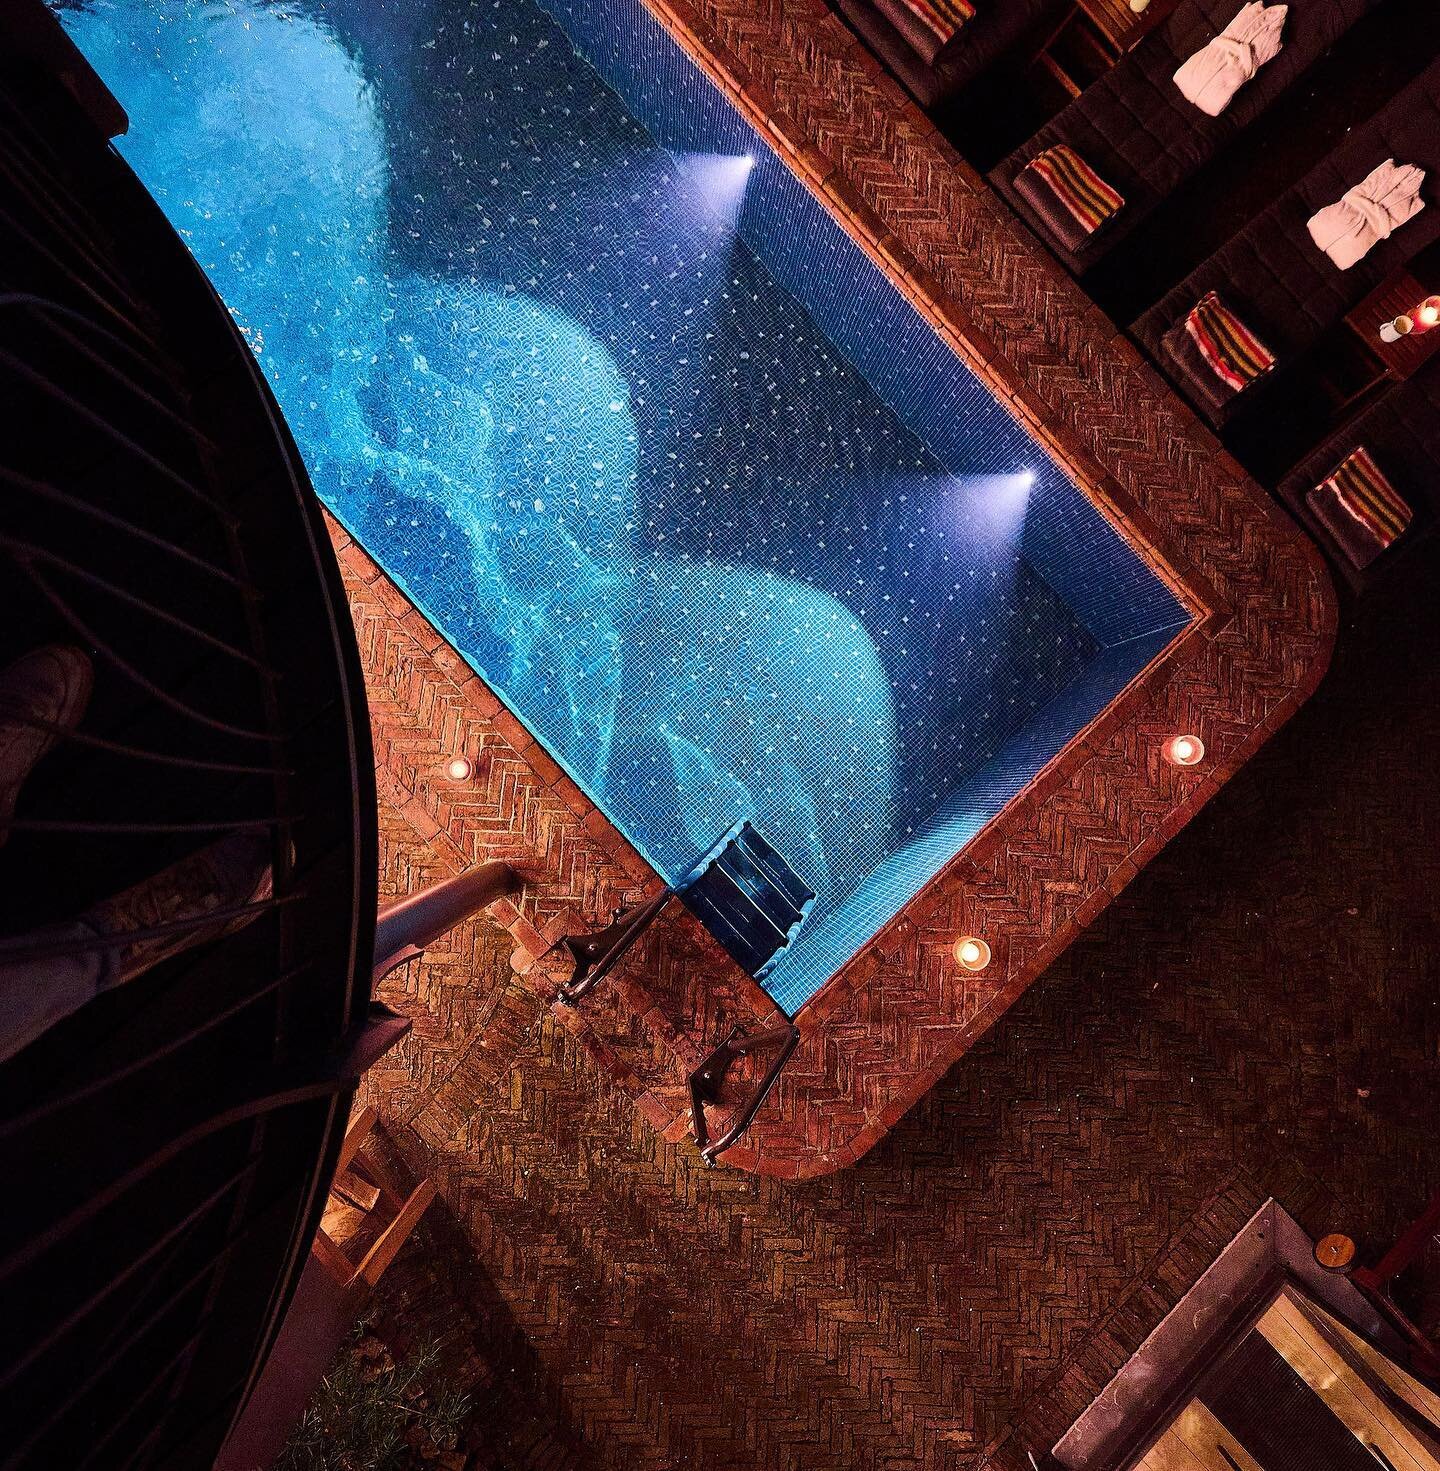 Al calar della sera, osate un tuffo nella nostra piscina esterna riscaldata (28 gradi). 

E poi rimanete al caldo intorno al braciere. 

#wellness #visitbrussels #hotel #piscina riscaldata #giardino #braciere